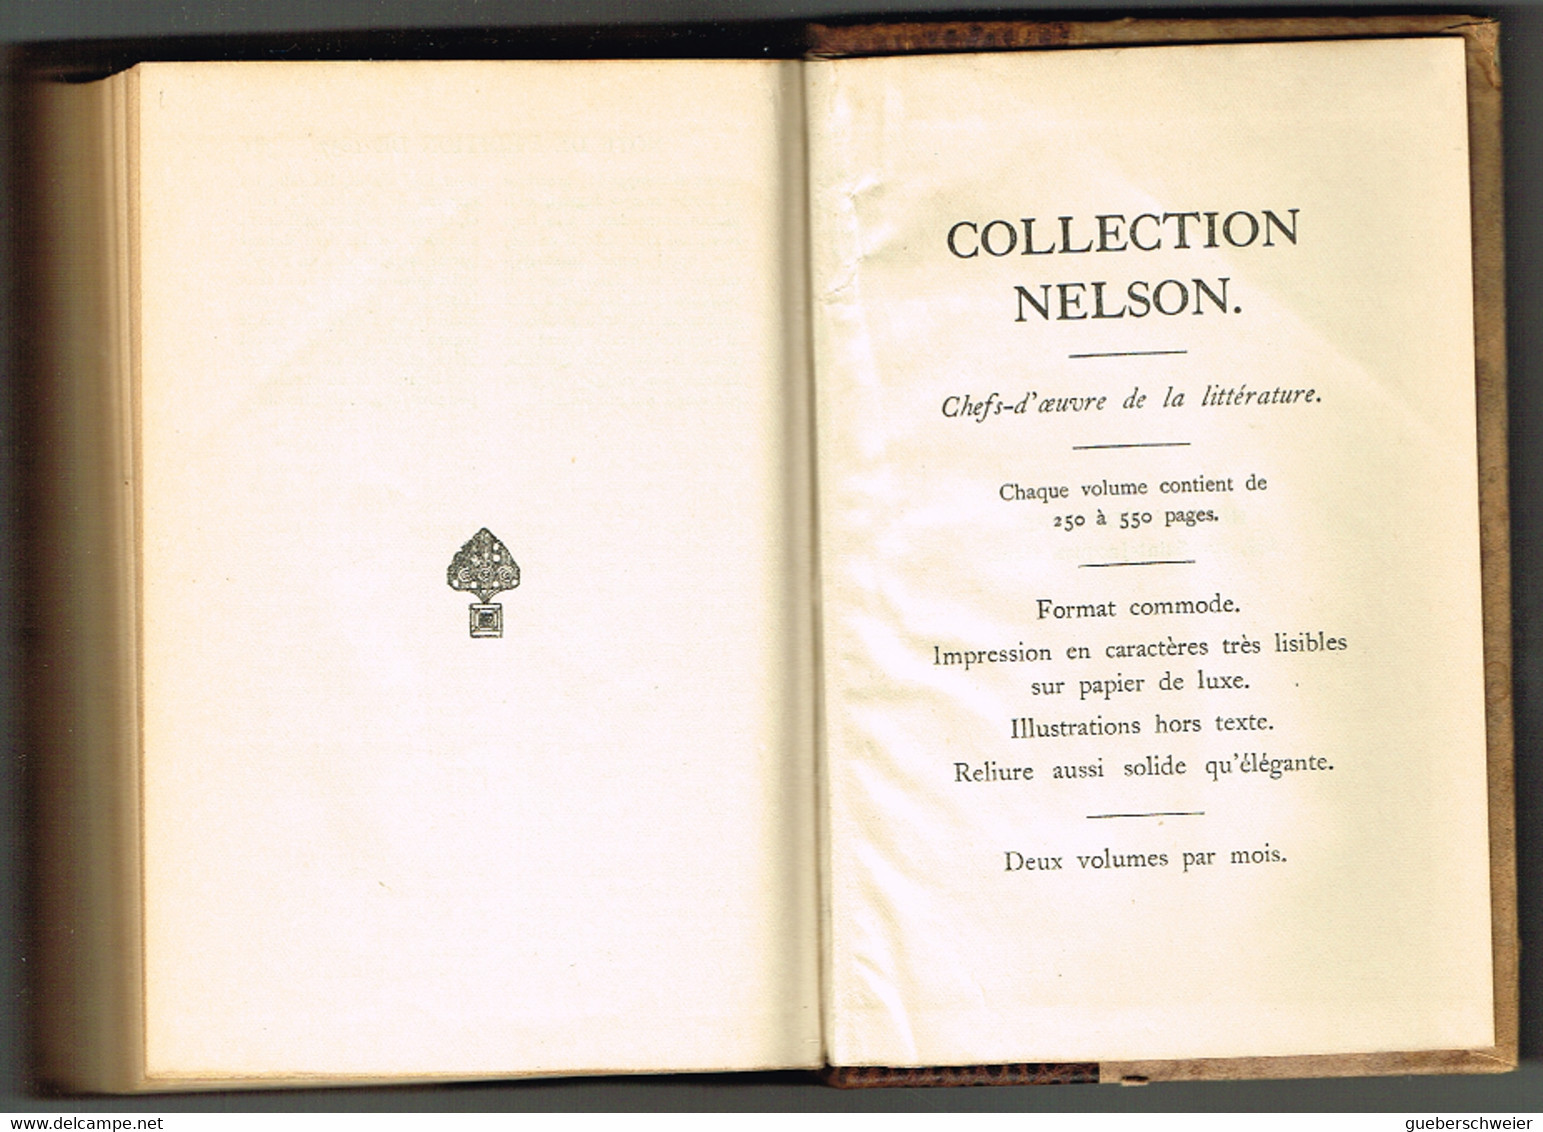 collection de 8 livres anciens des oeuvres complètes de Victor Hugo Editions Nelson Paris